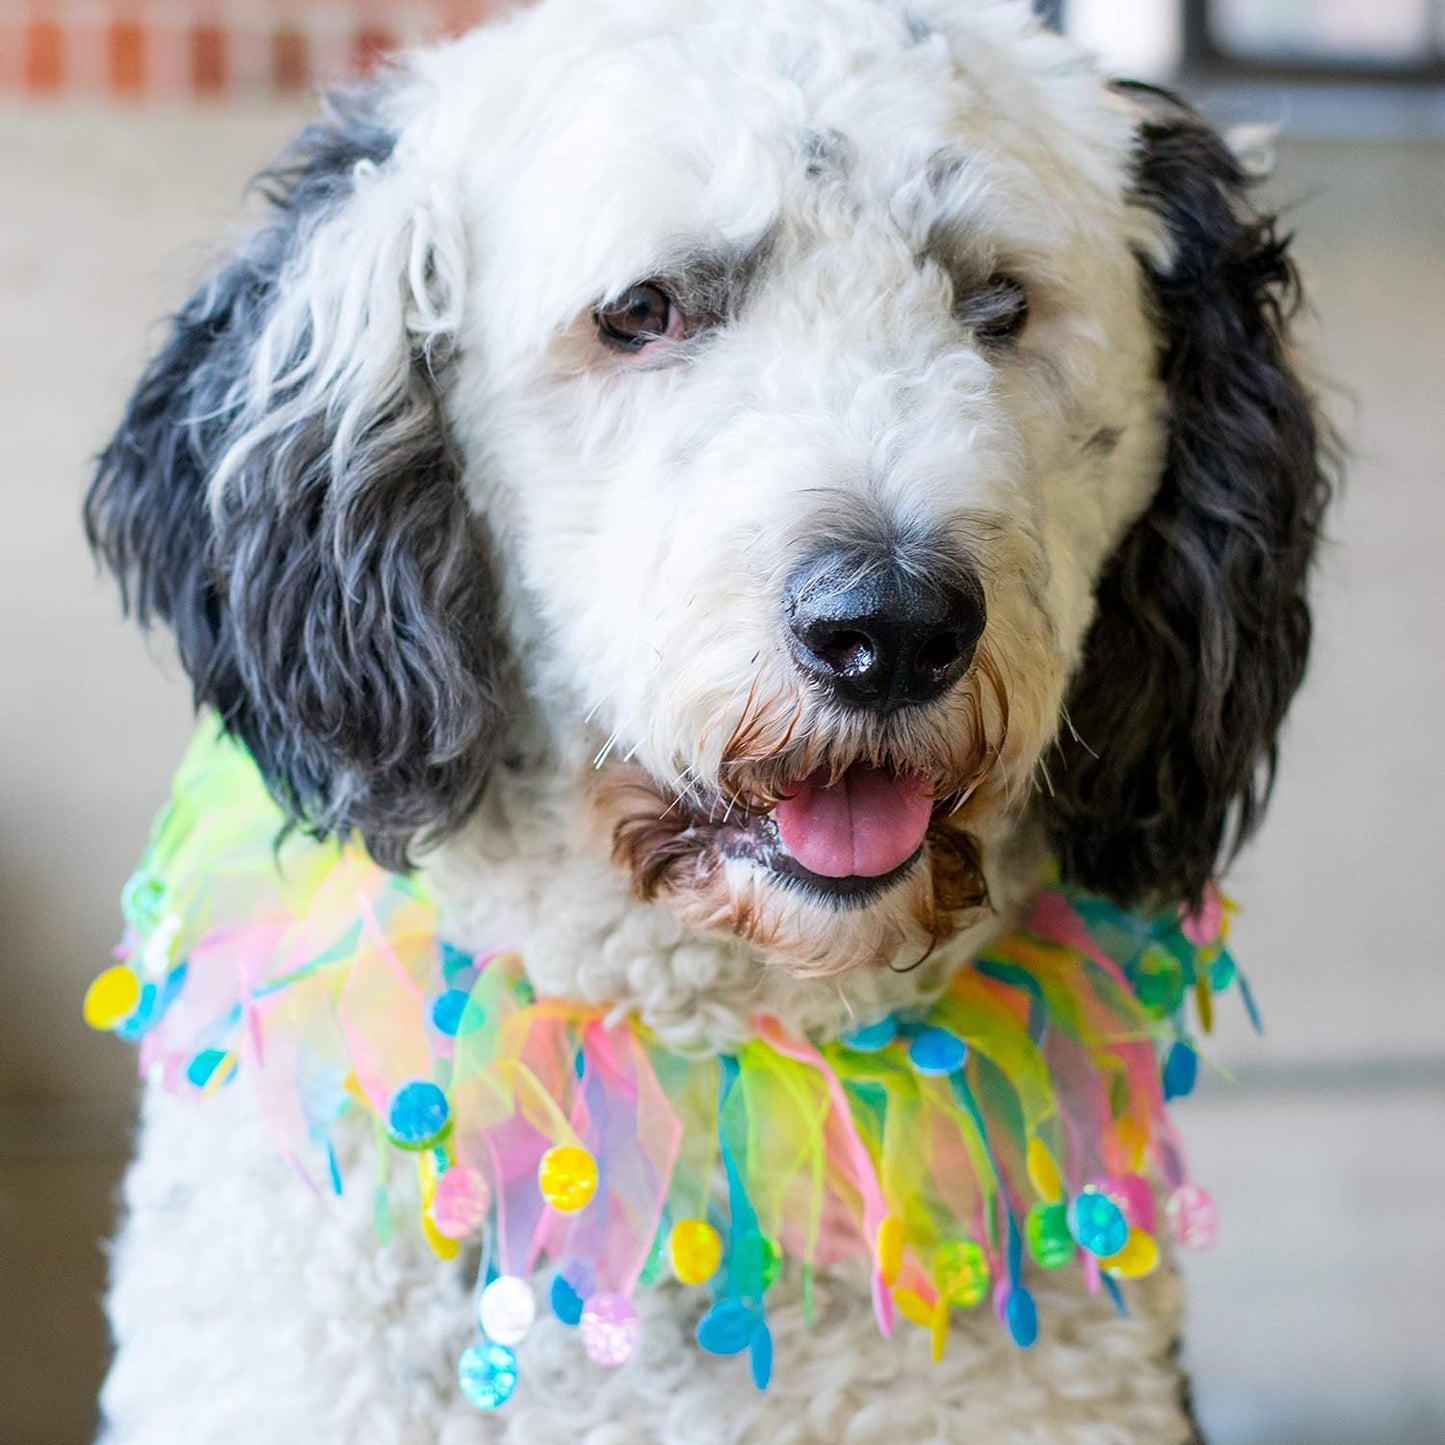 Midlee Easter Egg Decorative Dog Collar